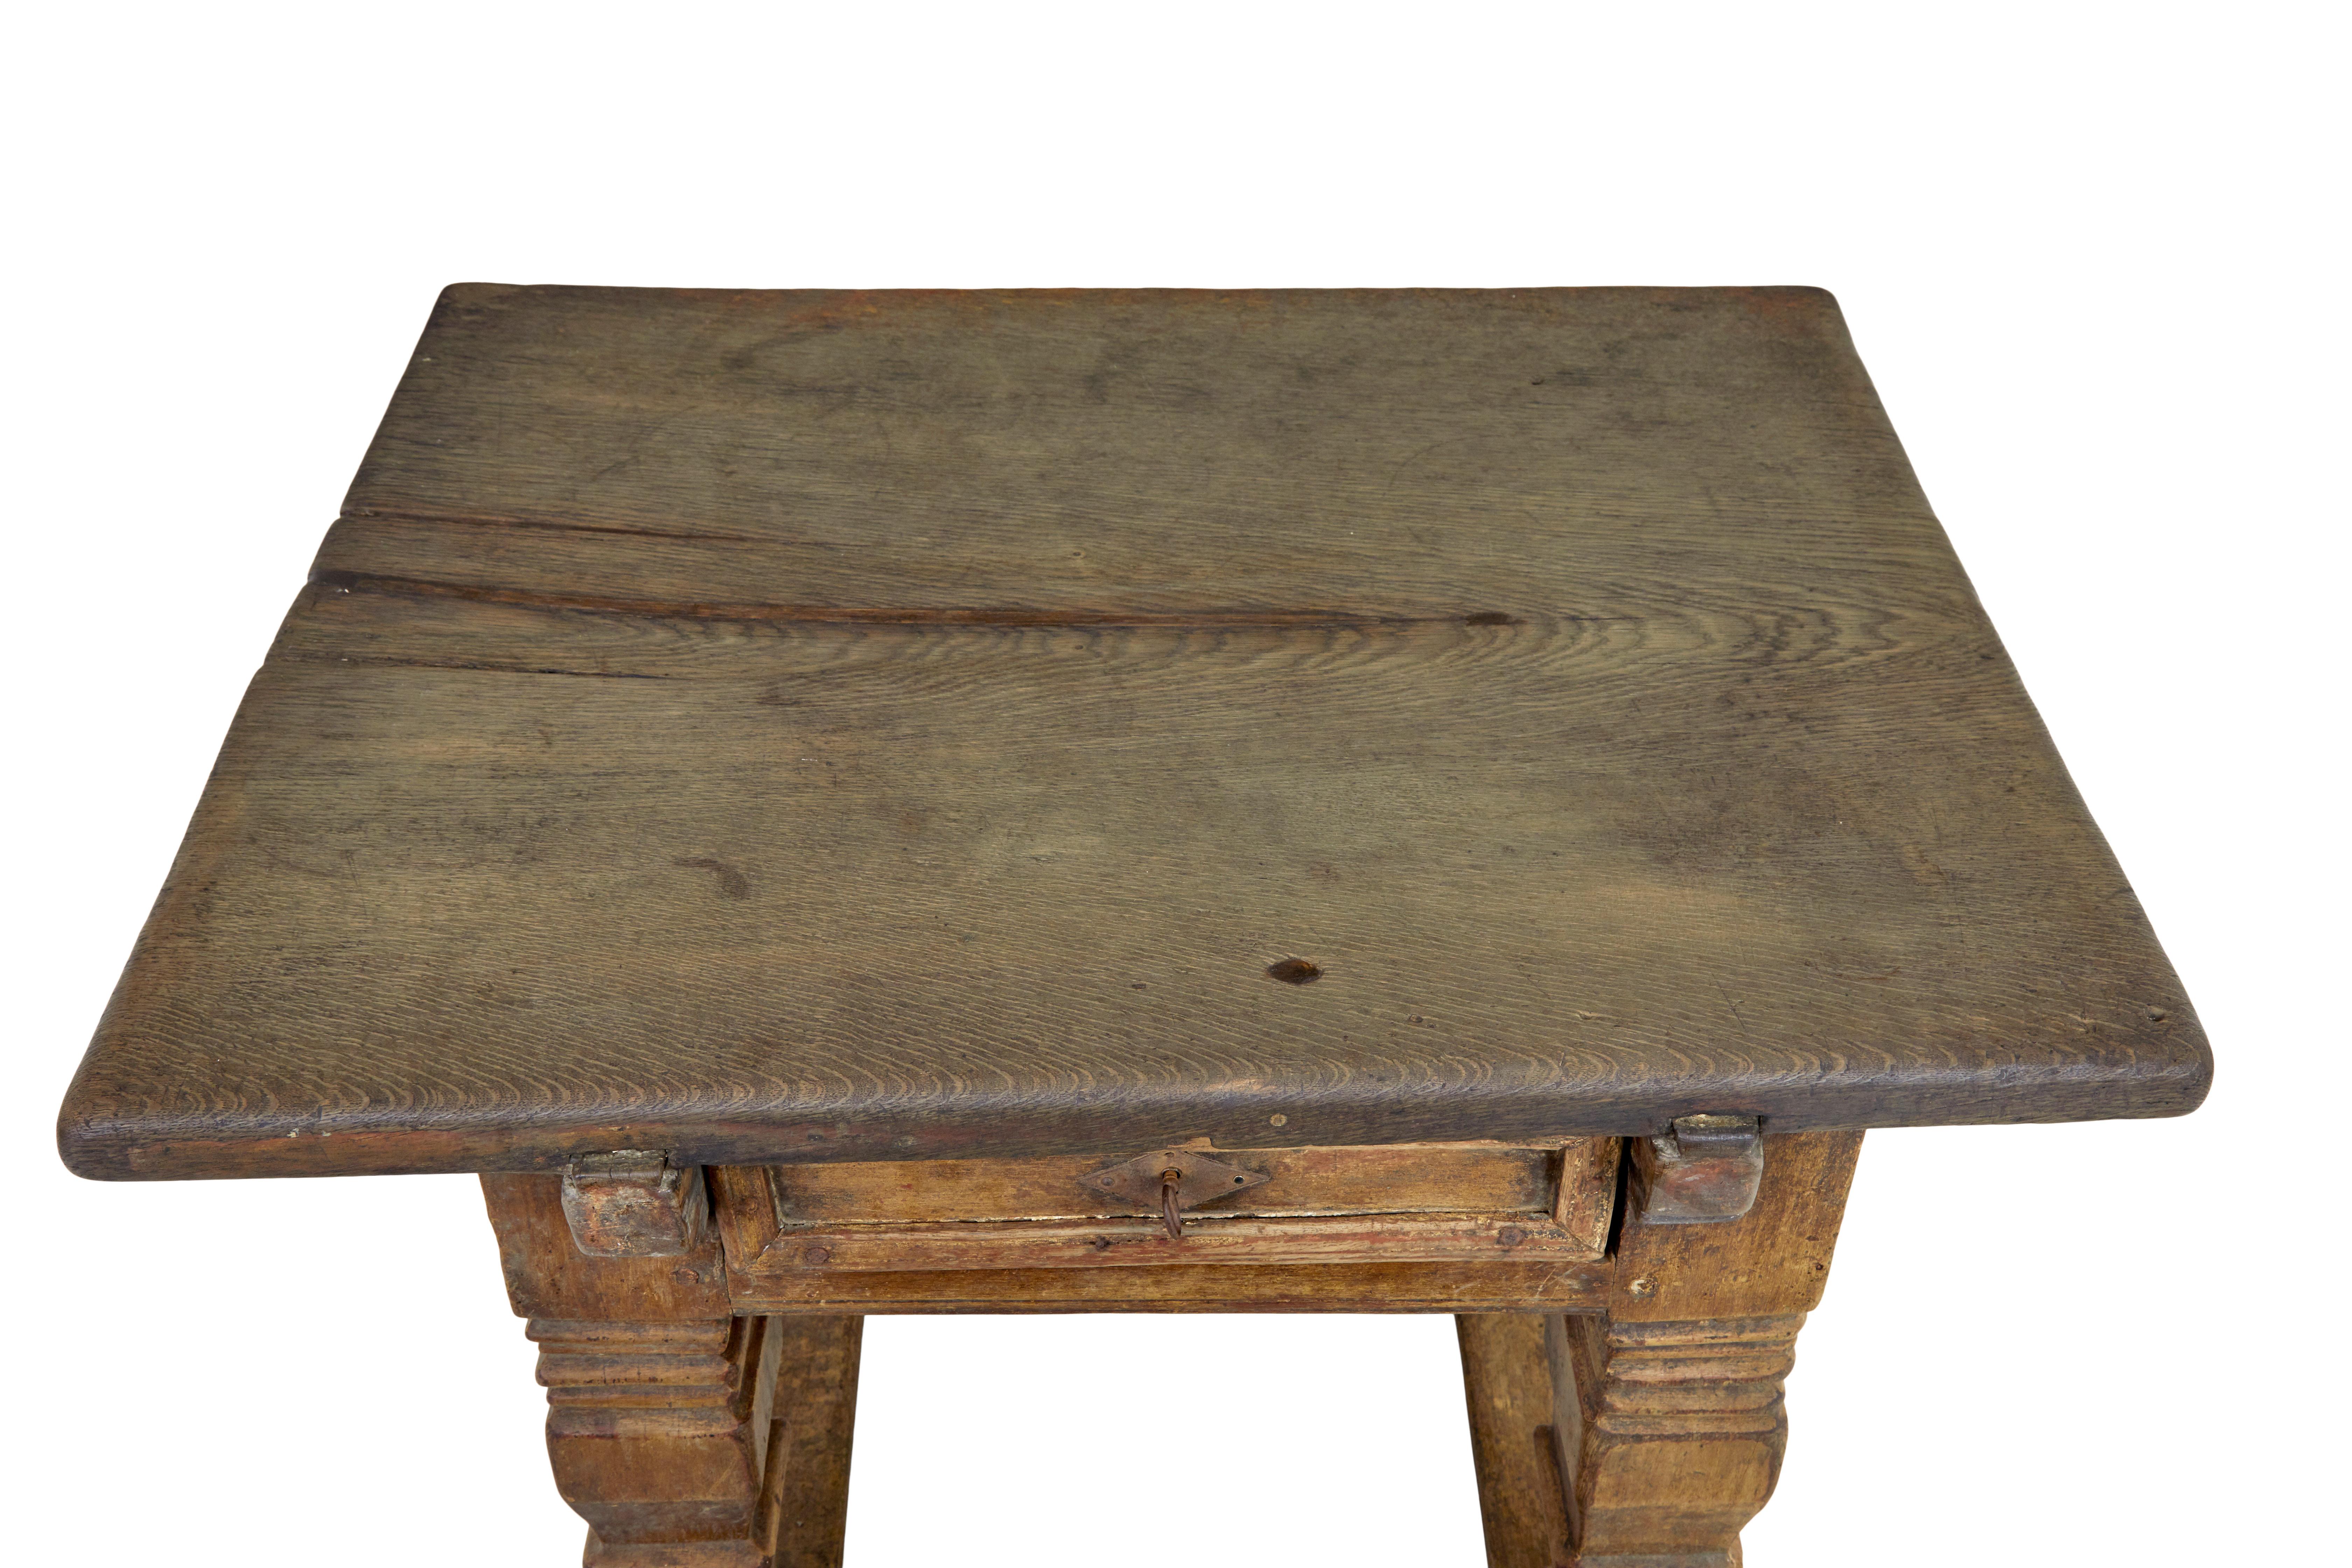 Flämischer geschnitzter Eichentisch aus dem 17. Jahrhundert, um 1690.

Wir freuen uns, diesen Tisch aus dem 17. Jahrhundert anbieten zu können, der oft als Rententisch bezeichnet wurde.

Übersegelte massive Eichenplatte, die jetzt mit einem Stück